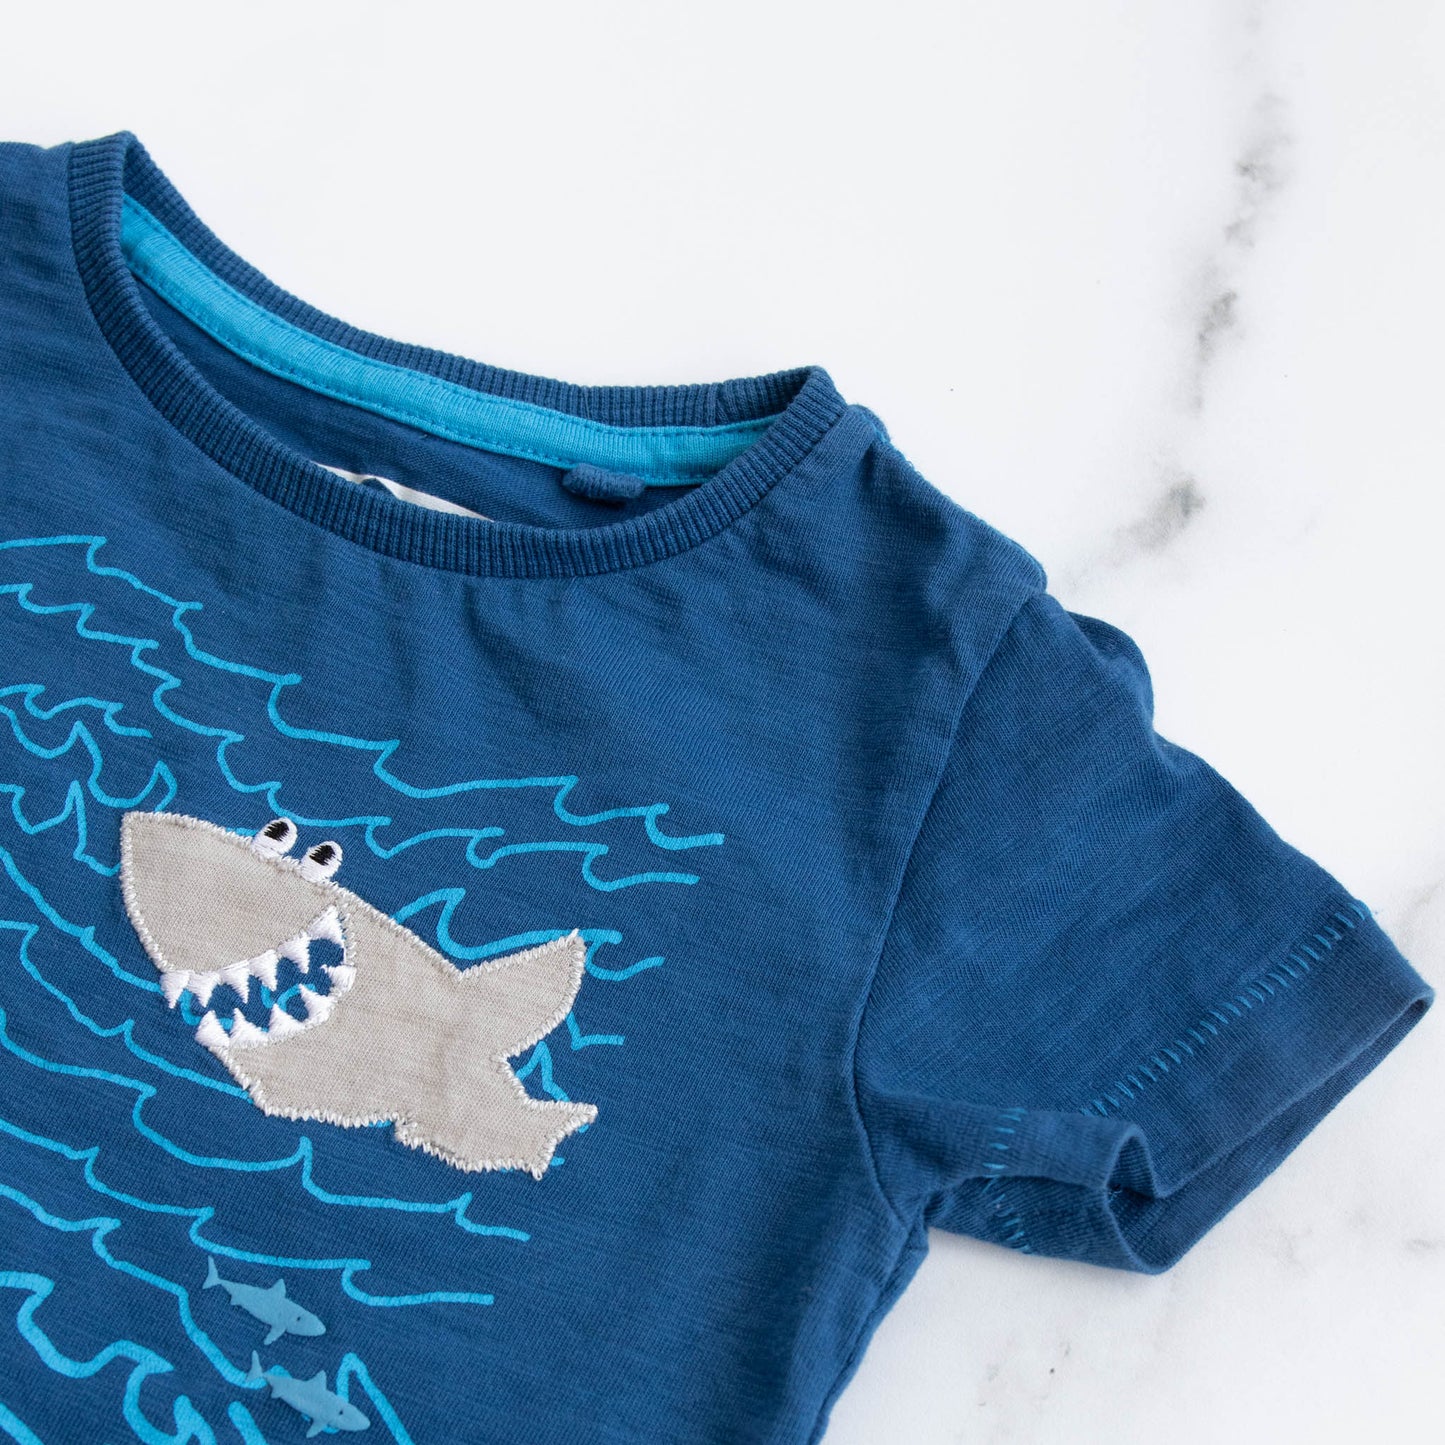 Next Shark T-shirt (6-9M)